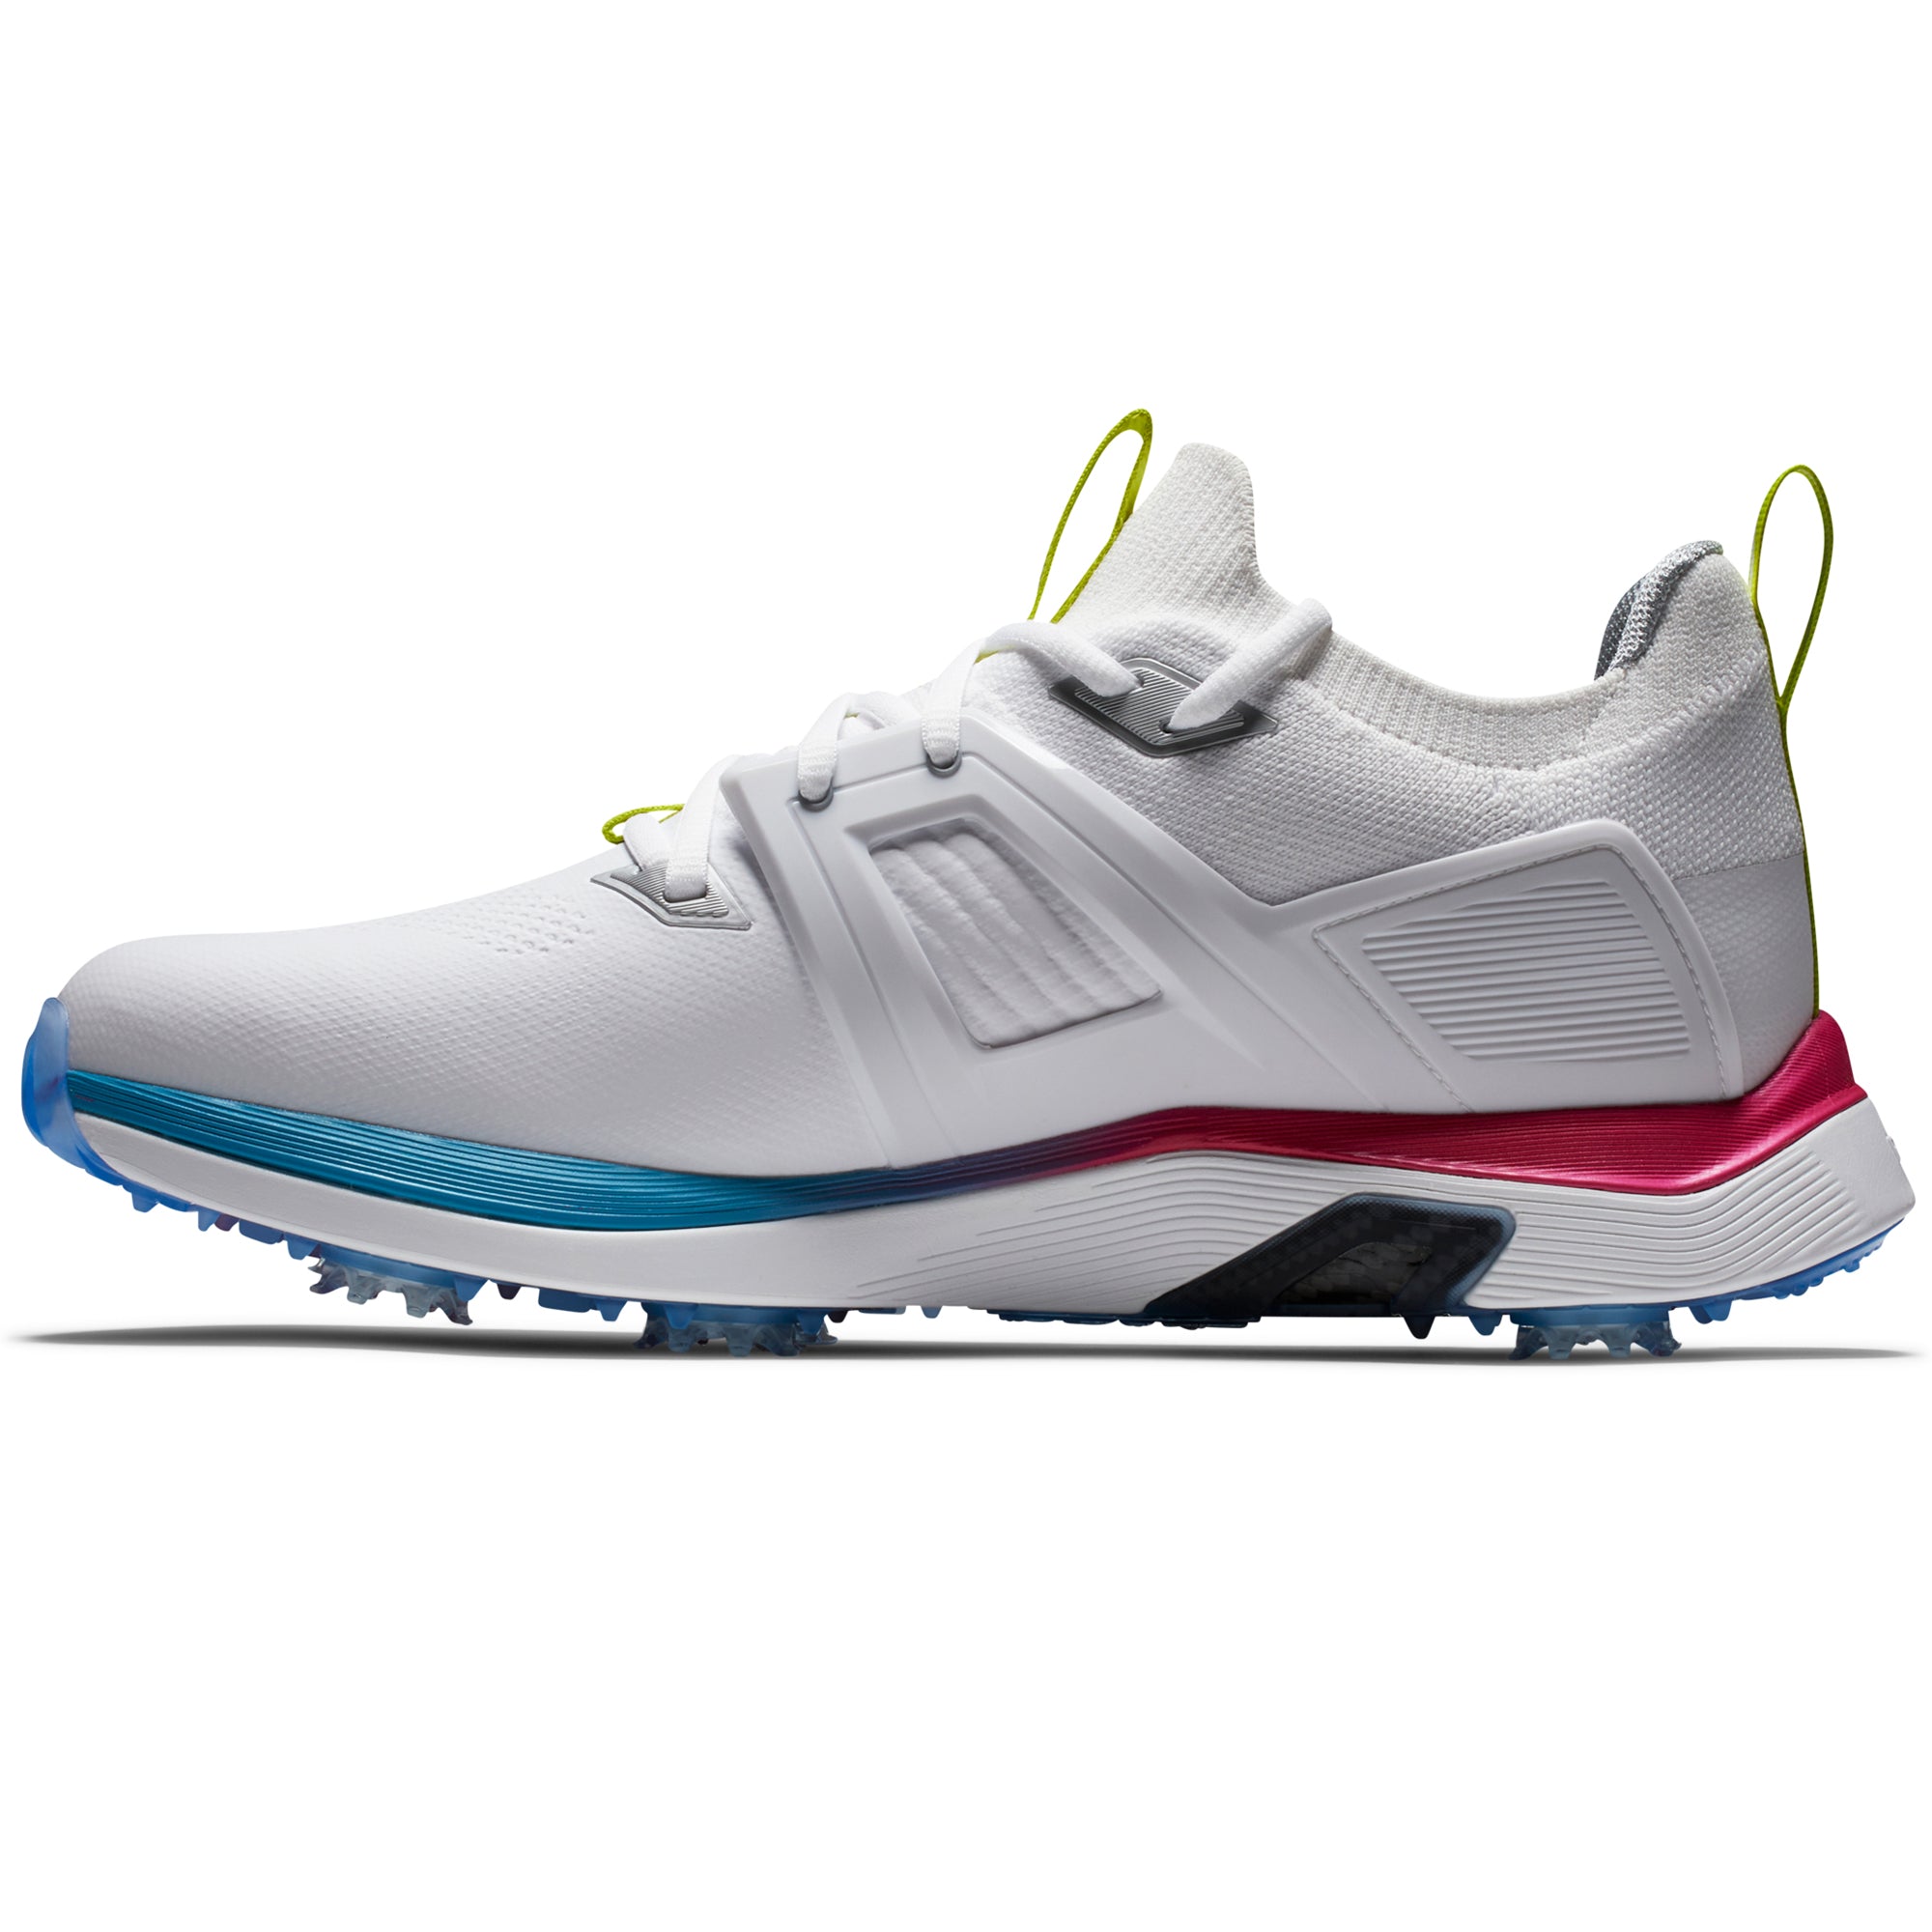 FootJoy HyperFlex Carbon Golf Shoes 51124 White Blue Purple | Function18